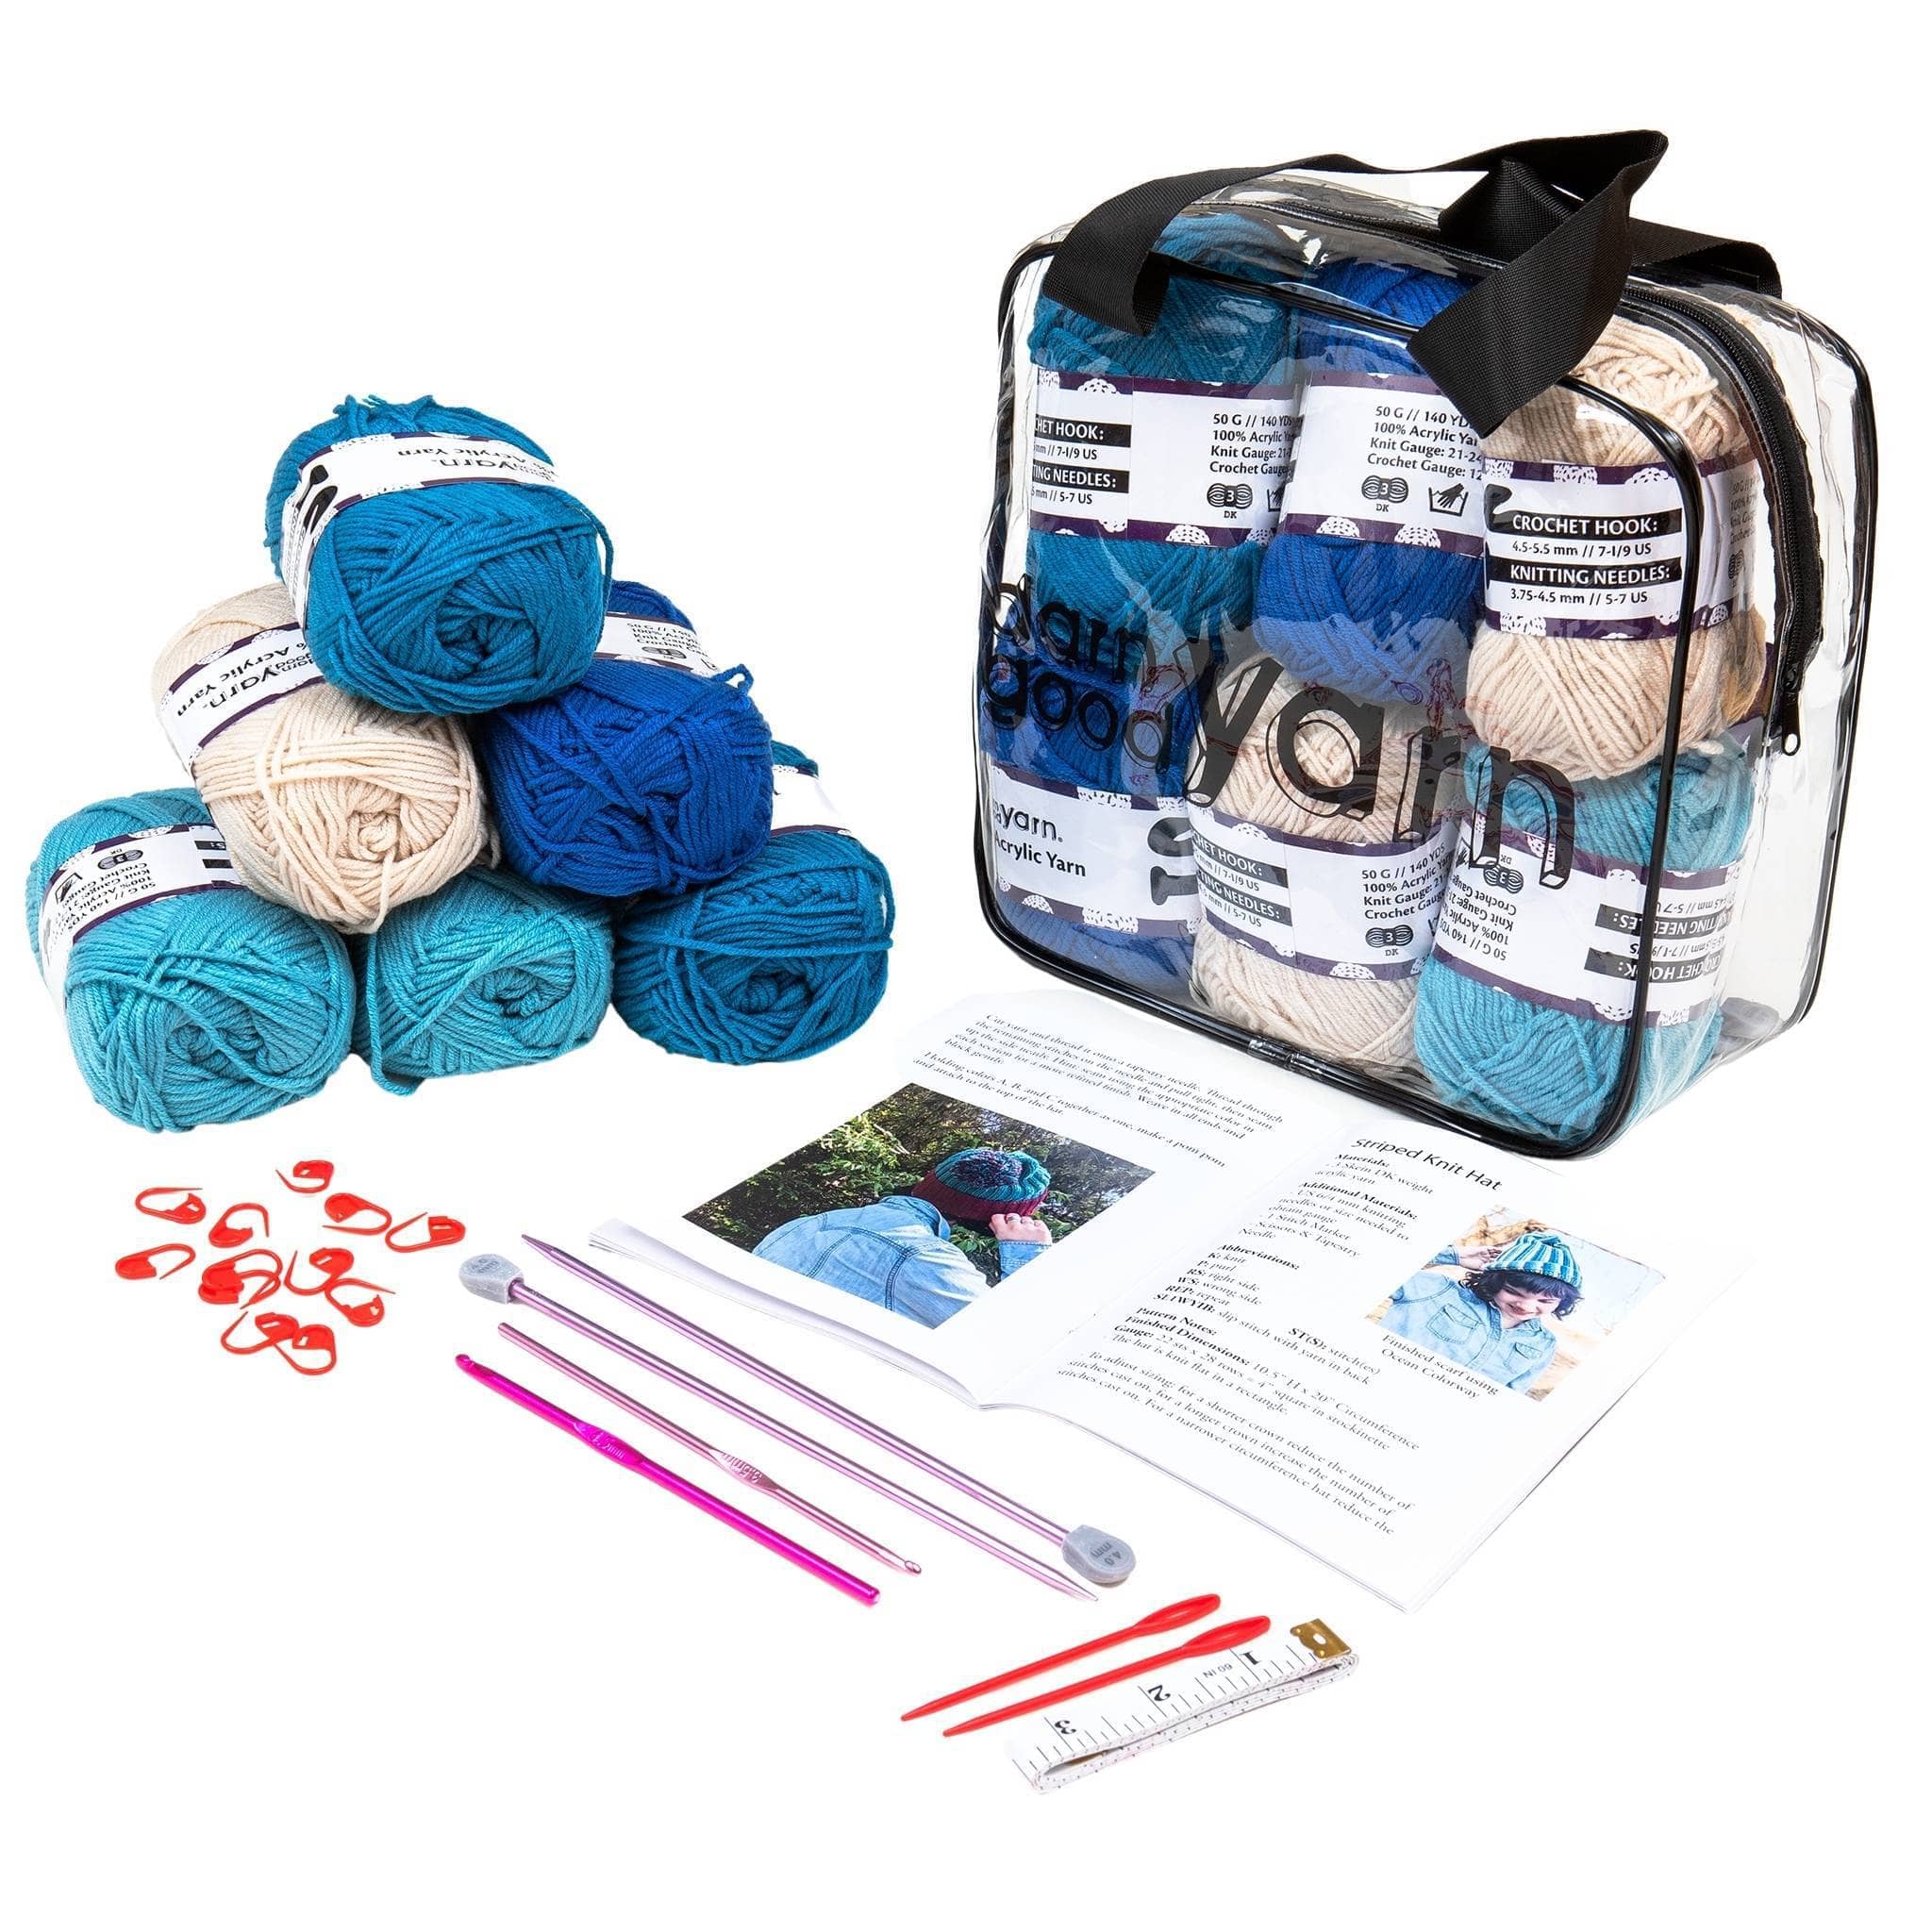 92 Pcs Crochet Kit for Beginners, Crochet Kit with Crochet Hooks Yarn Set,  Crochet Starter Kit Include 15 Colors Yarn Skeins Knitting Accessories for